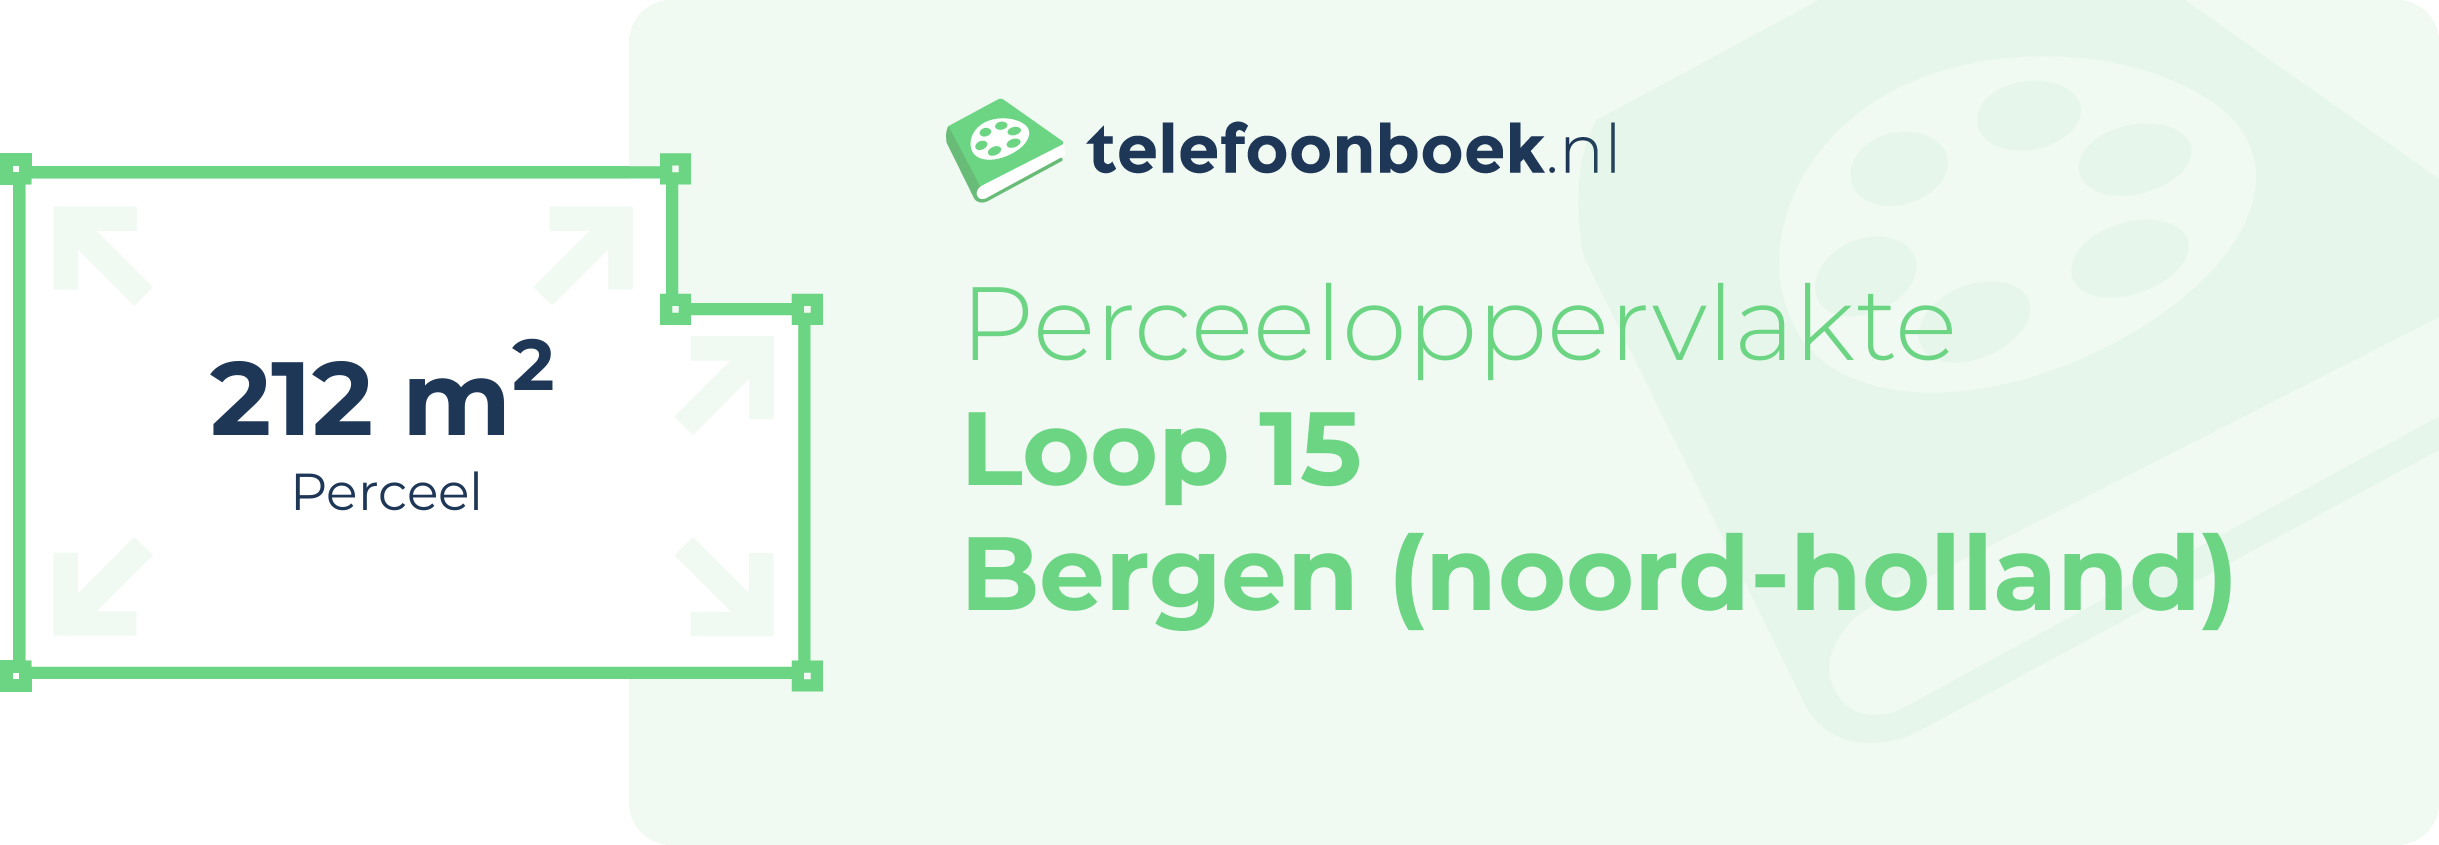 Perceeloppervlakte Loop 15 Bergen (Noord-Holland)